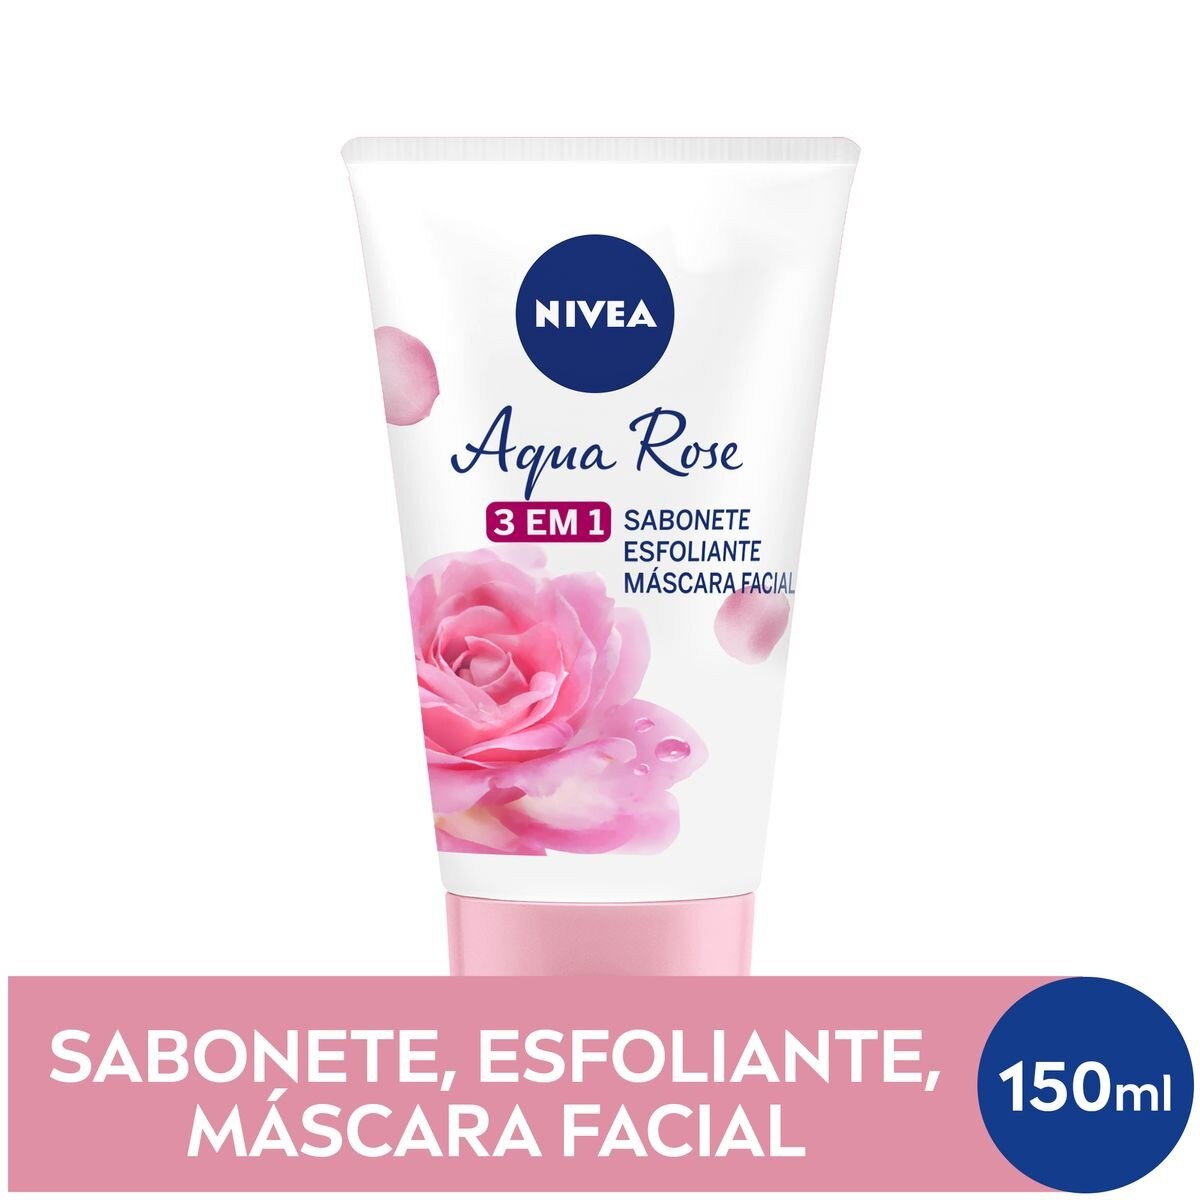 Sabonete, Esfoliante e Mascara Facial Nivea Aqua Rose 3 em 1 com 150ml